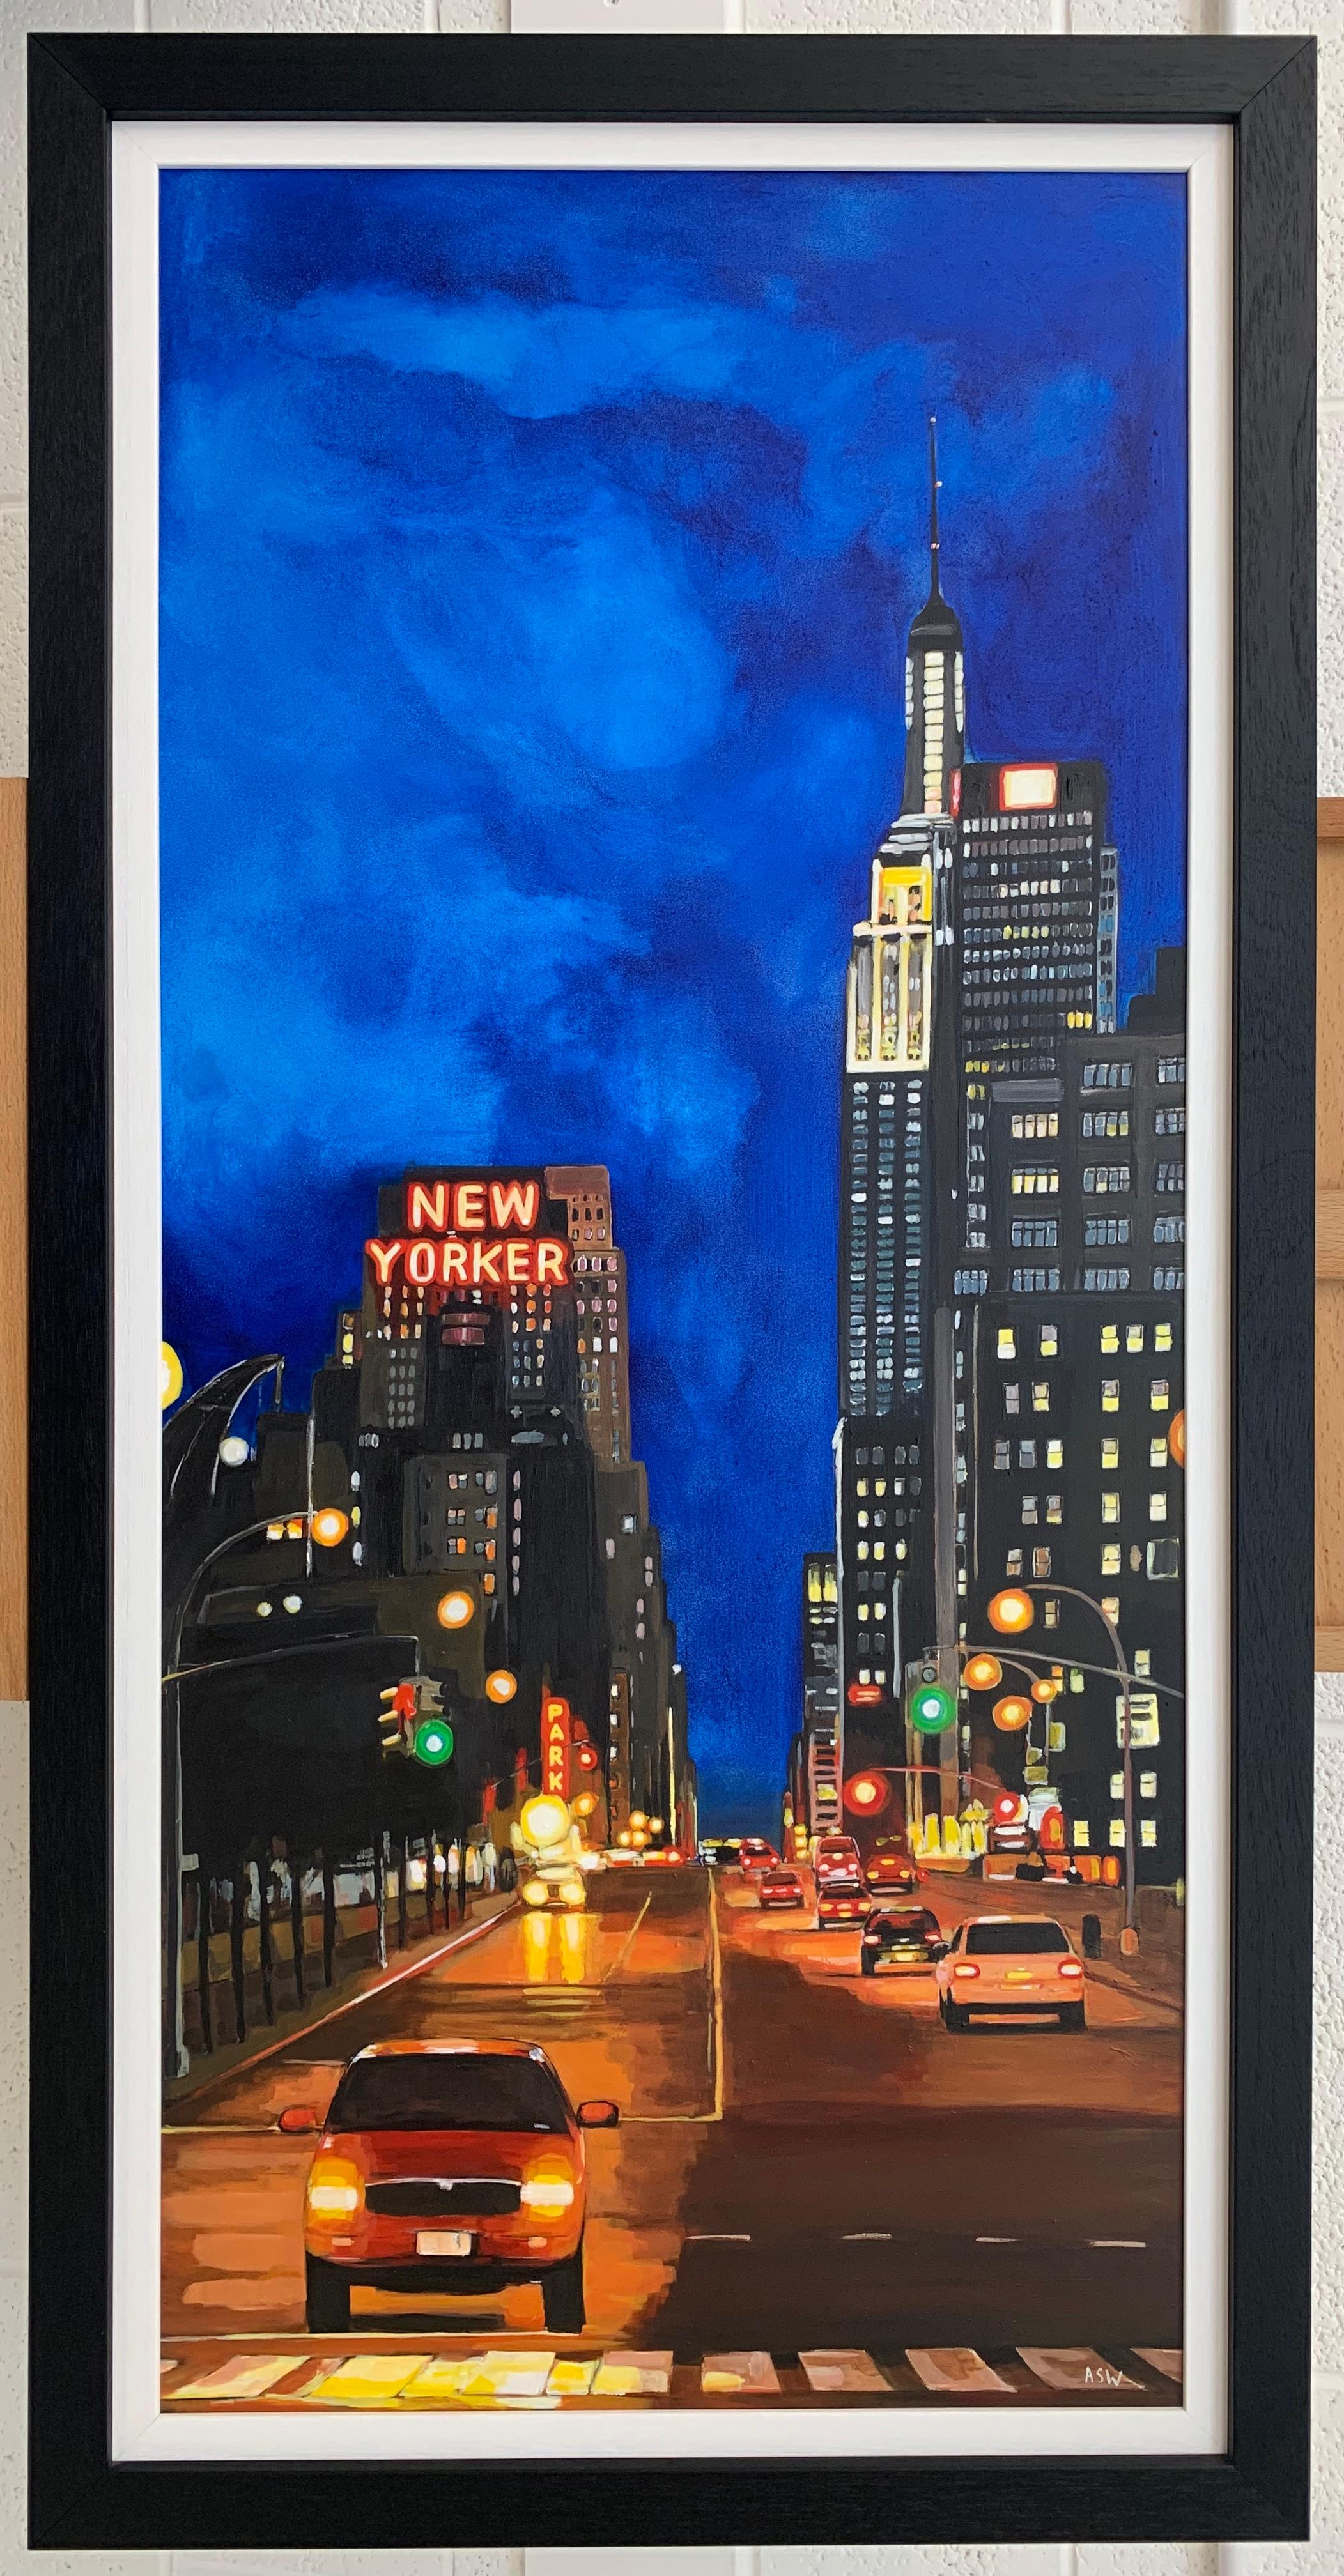 The New Yorker Hotel, 8th Avenue Manhattan, New York City, von britischem Urban Artist  (Violett), Landscape Painting, von Angela Wakefield